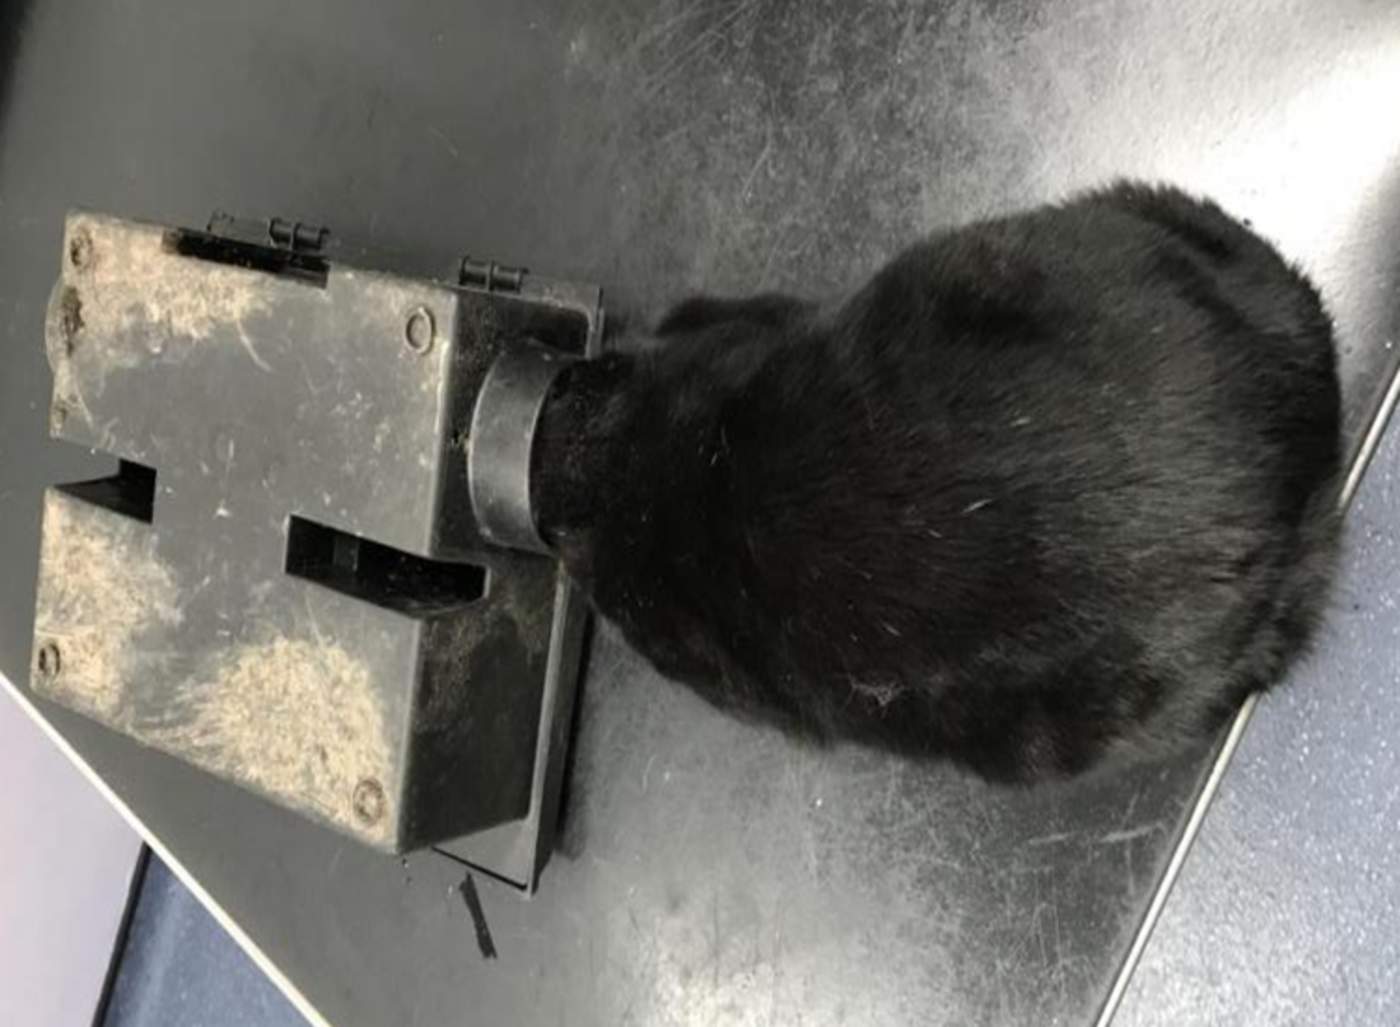 Ayudan a un gato atrapado en trampa para ratas